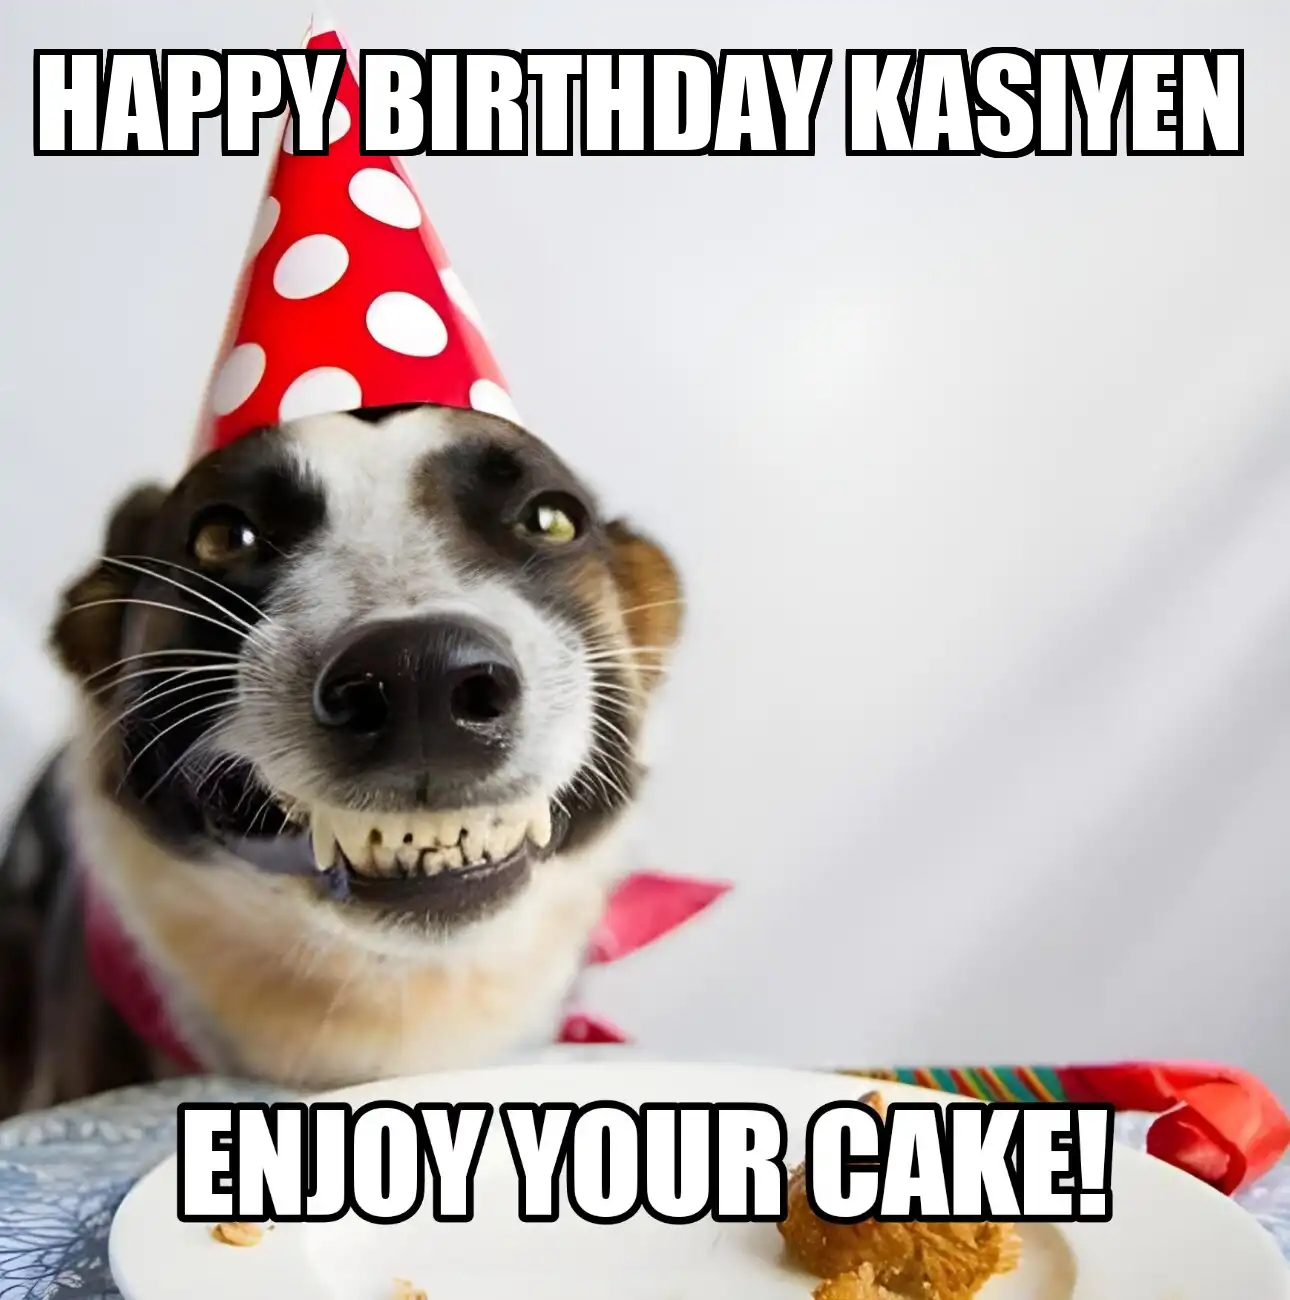 Happy Birthday Kasiyen Enjoy Your Cake Dog Meme